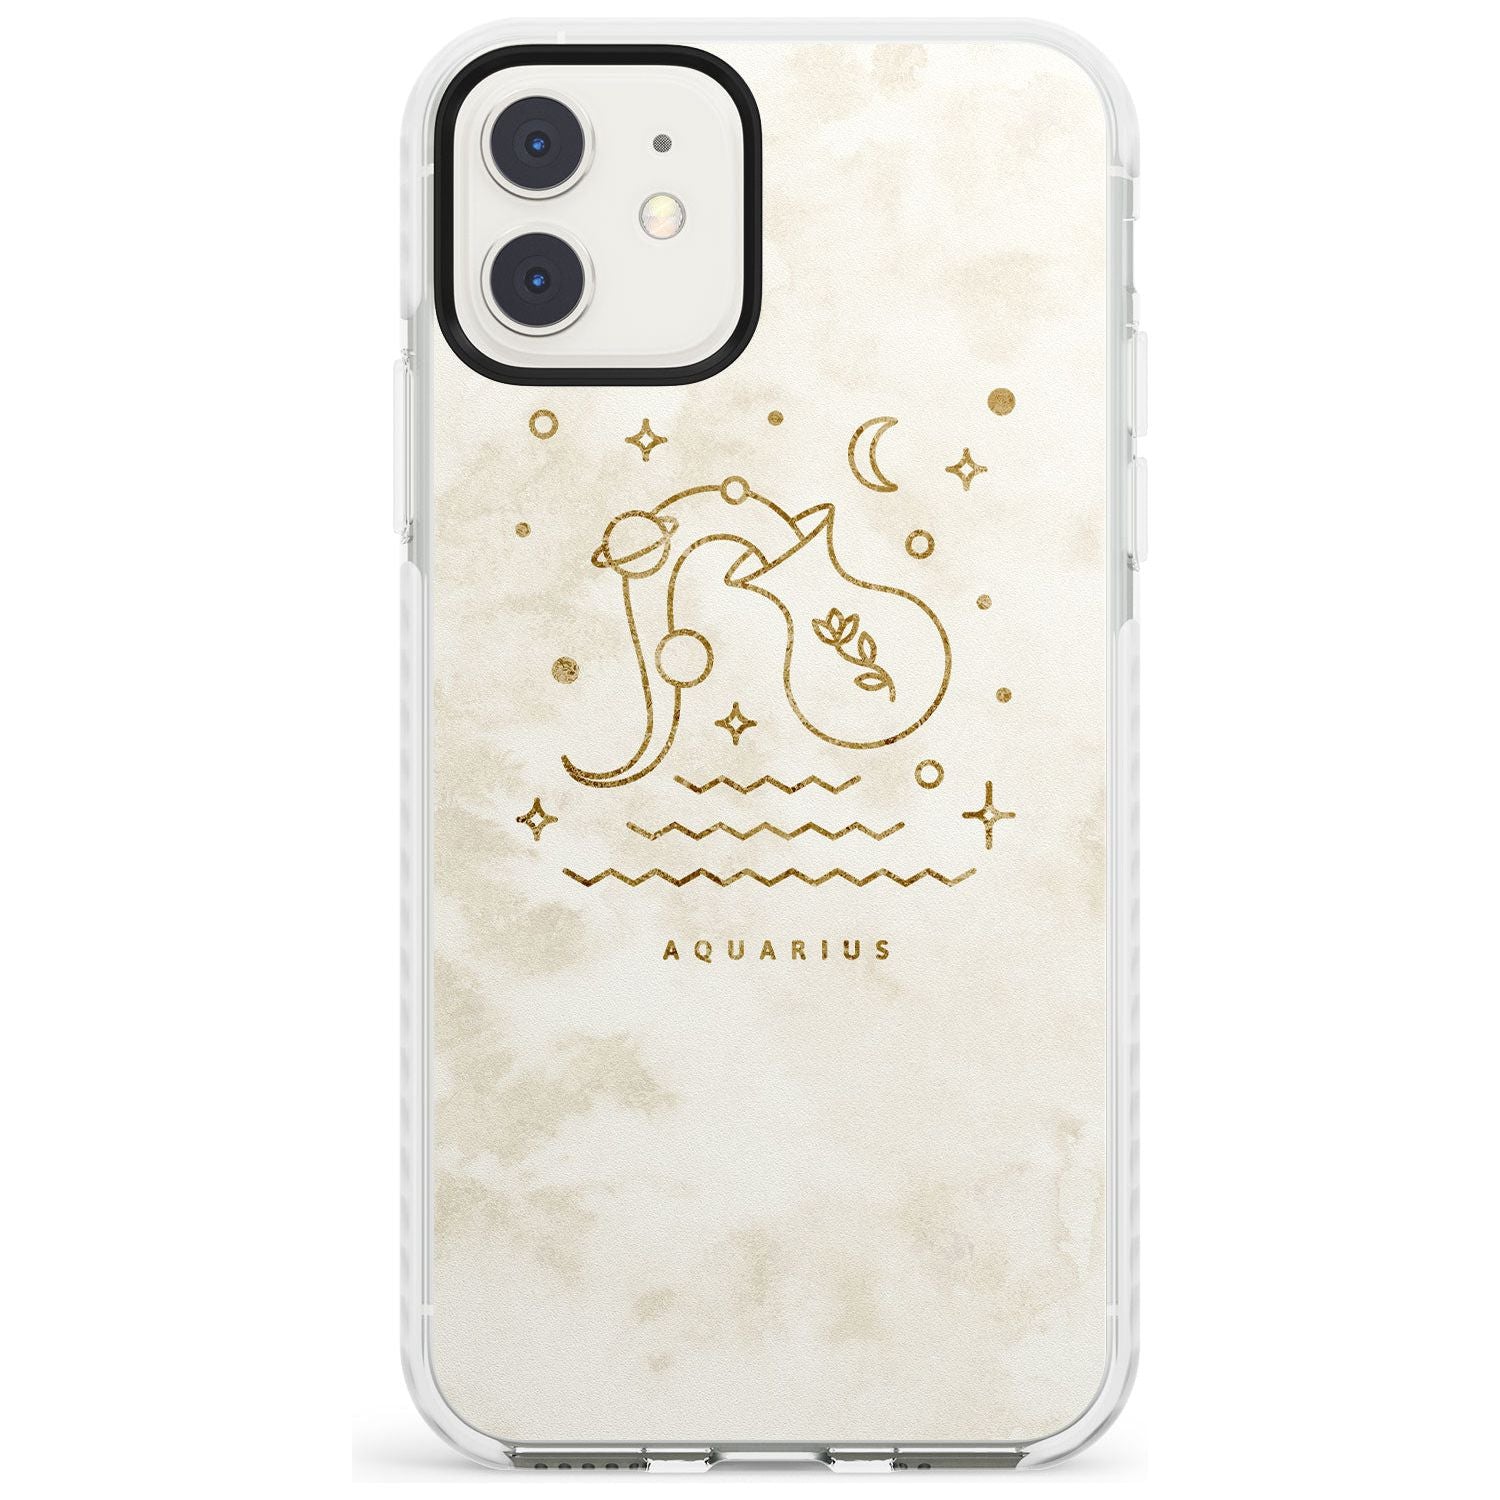 Aquarius Emblem - Solid Gold Marbled Design Impact Phone Case for iPhone 11